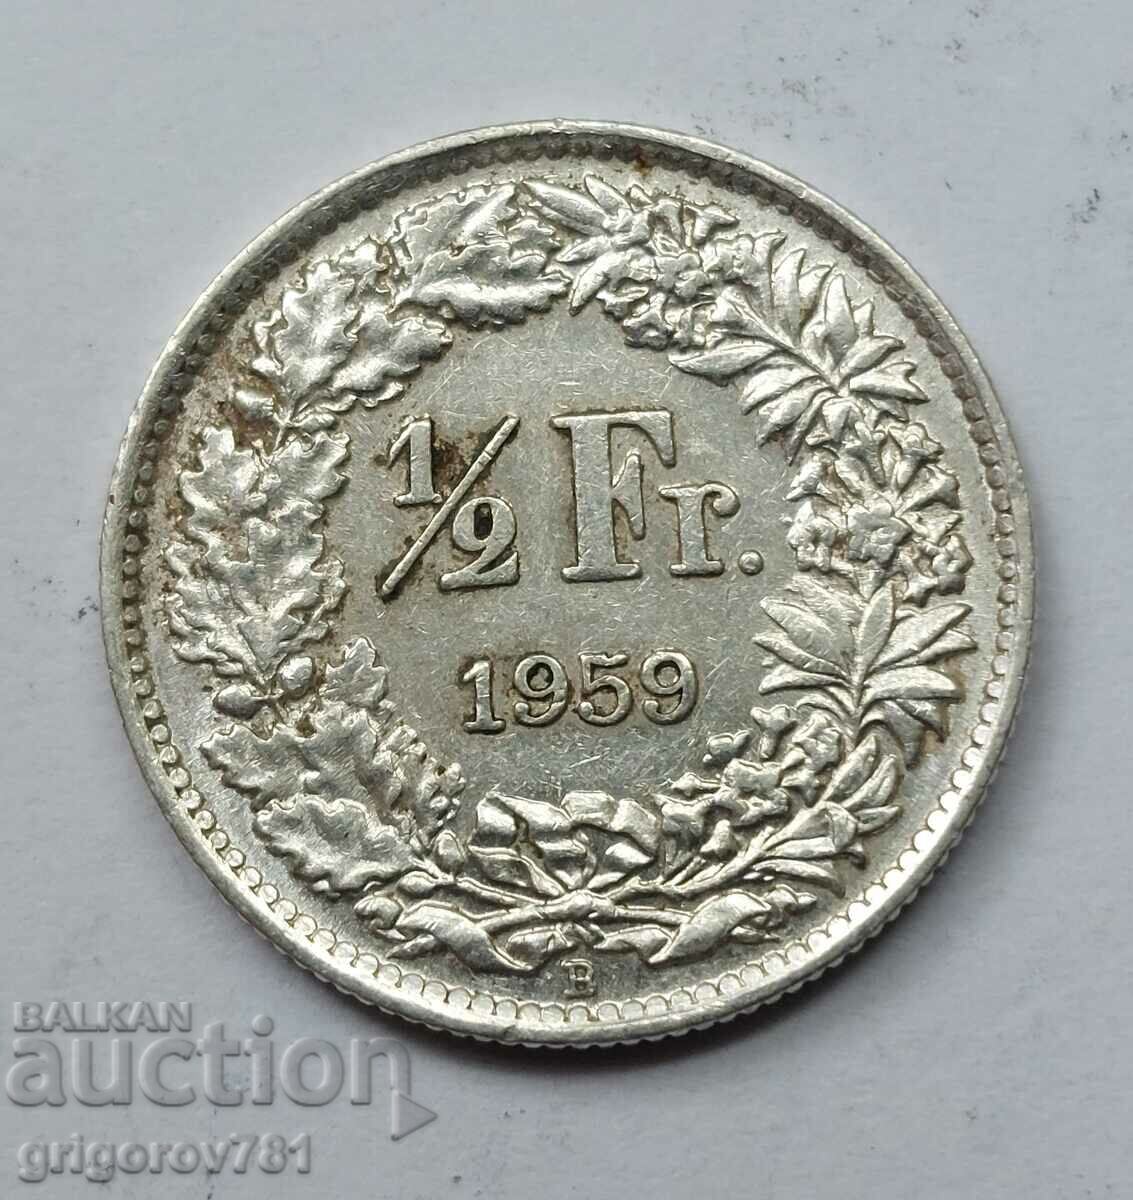 Ασημένιο φράγκο 1/2 Ελβετία 1959 B - Ασημένιο νόμισμα #18